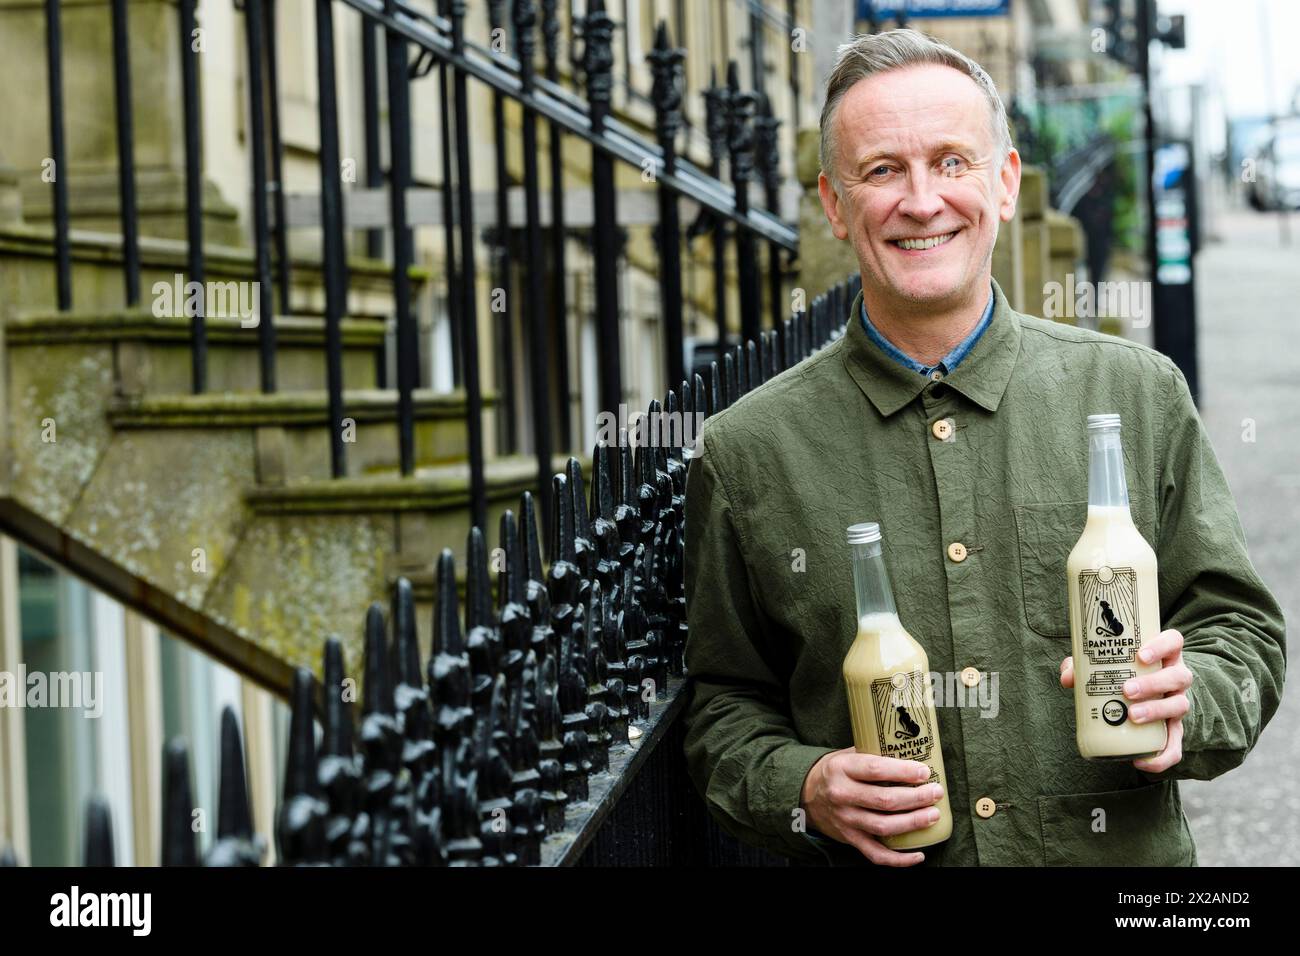 Sur la photo, Paul Crawford, fondateur de Panther M*lk, fournira le premier cocktail au monde à base de lait d’avoine aux magasins Asda Scotland. C’est le sapin de la marque Banque D'Images